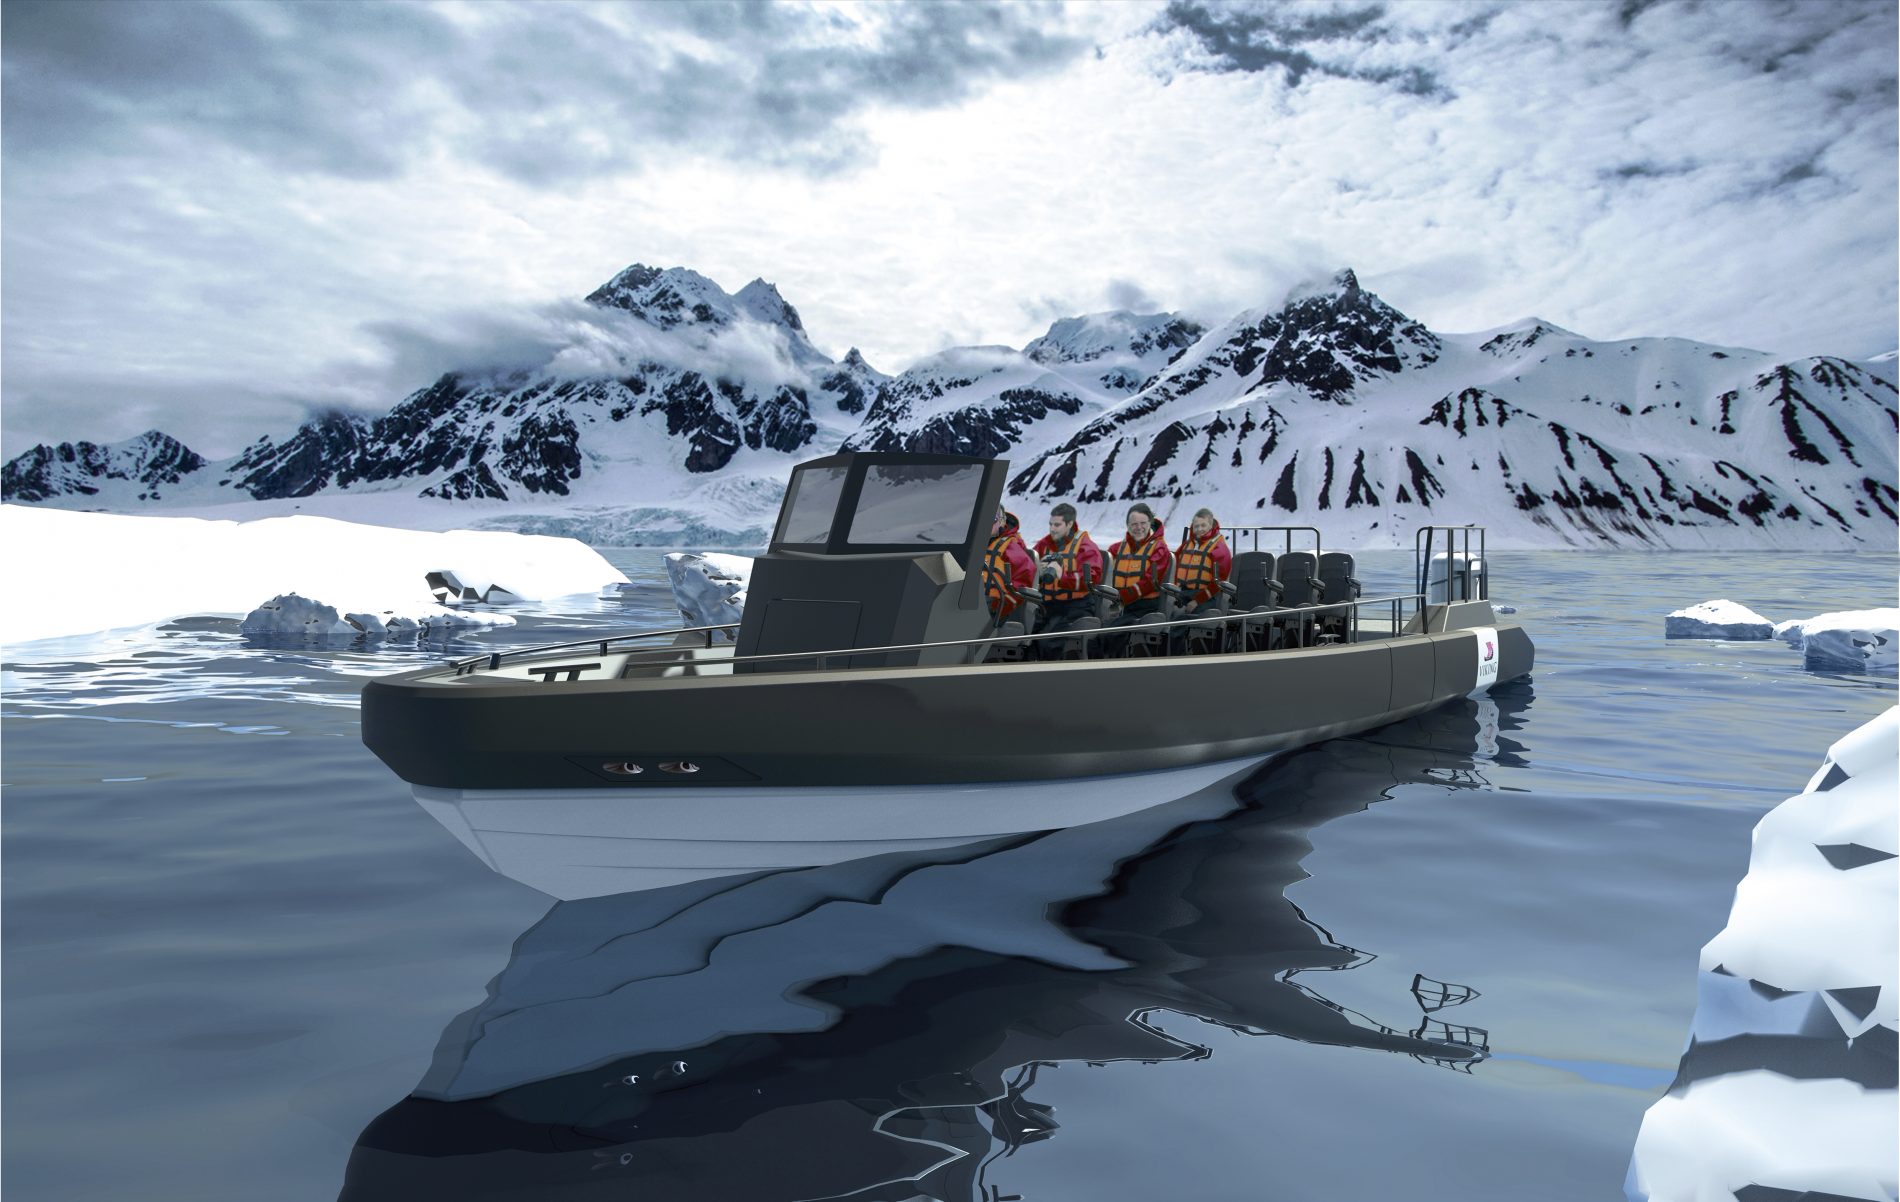 Viking Expedition Ship Convertible RIB Excursion